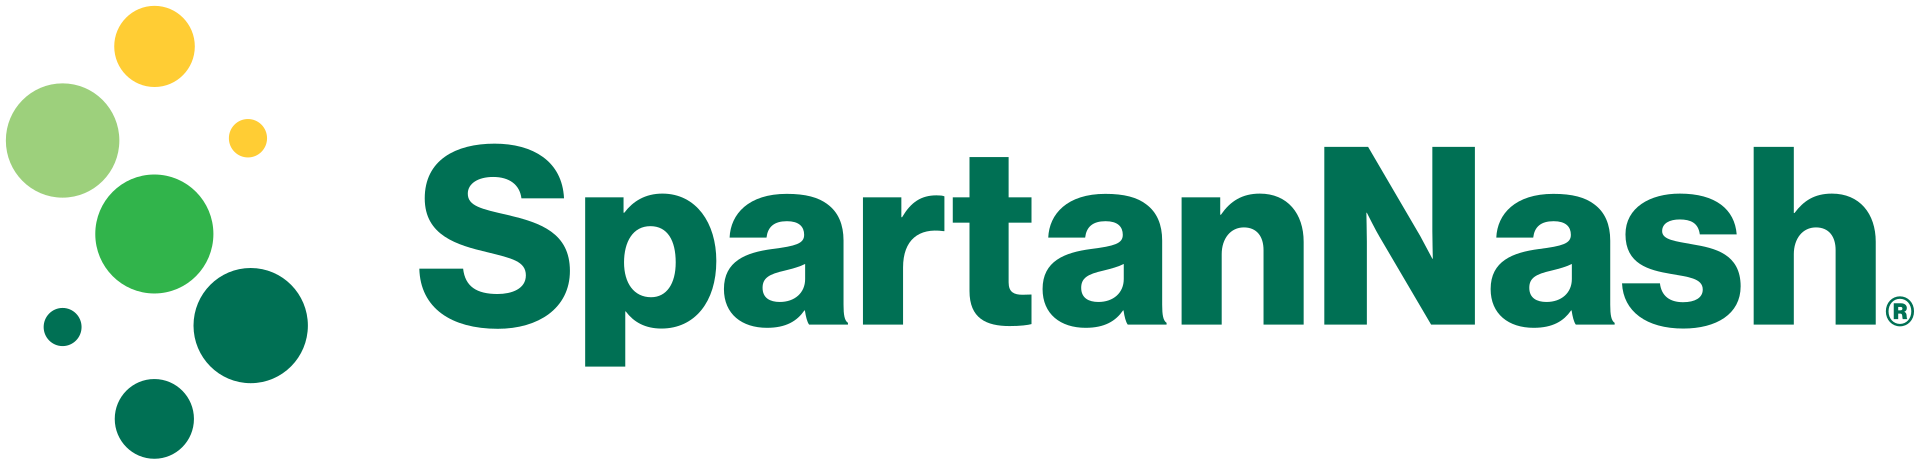 SpartanNash logo